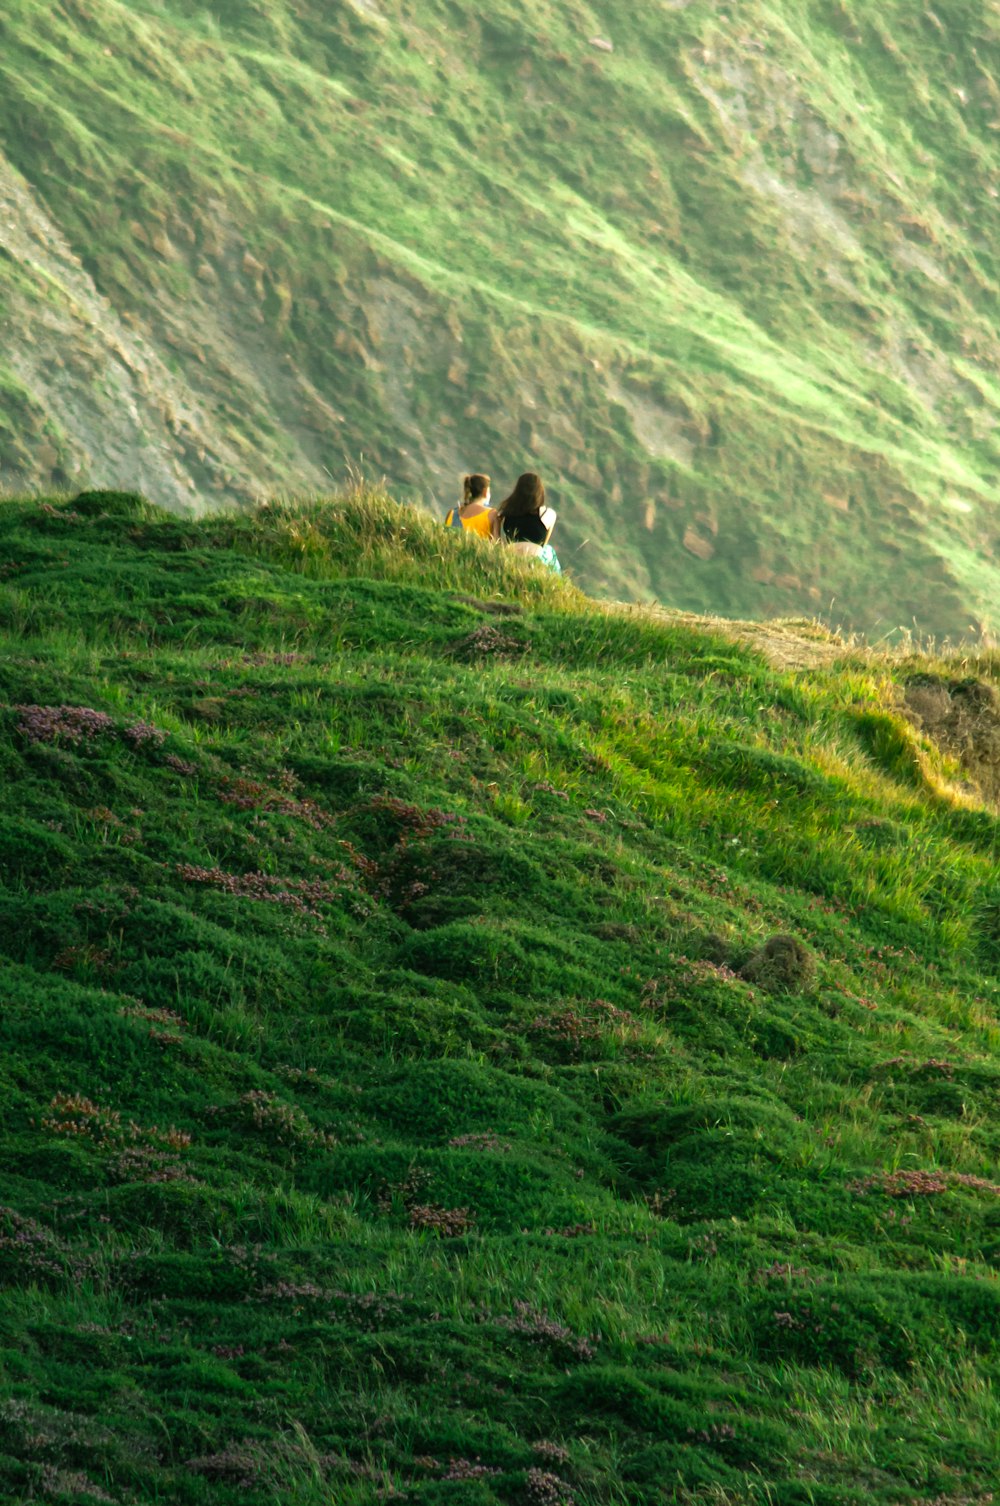 pessoa na camisa preta sentada no campo de grama verde durante o dia